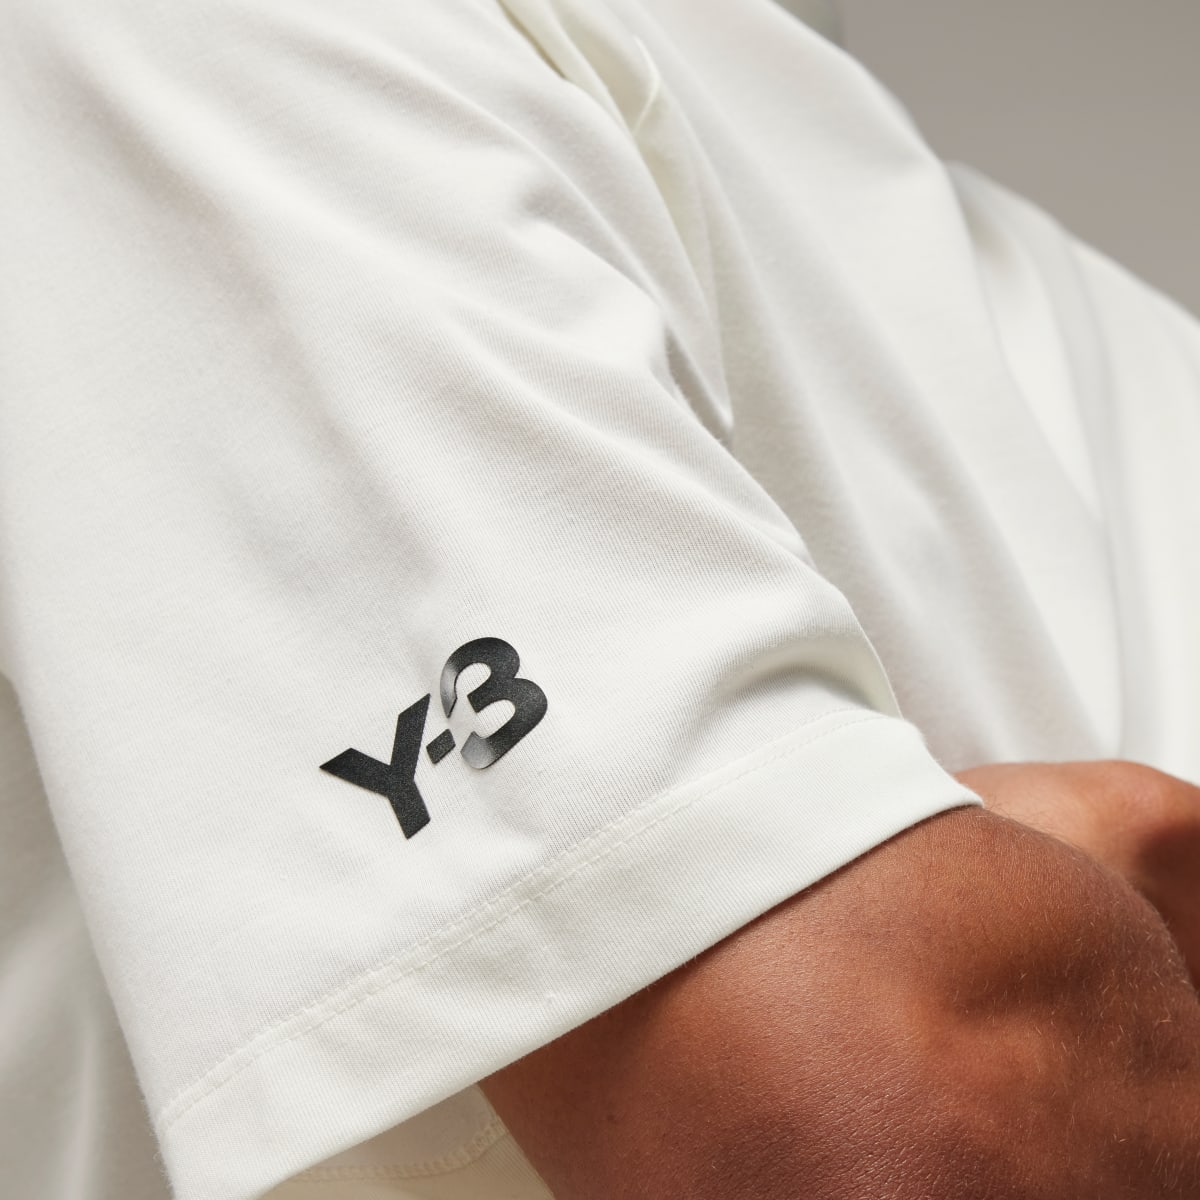 Adidas Y-3 3-Streifen T-Shirt. 8